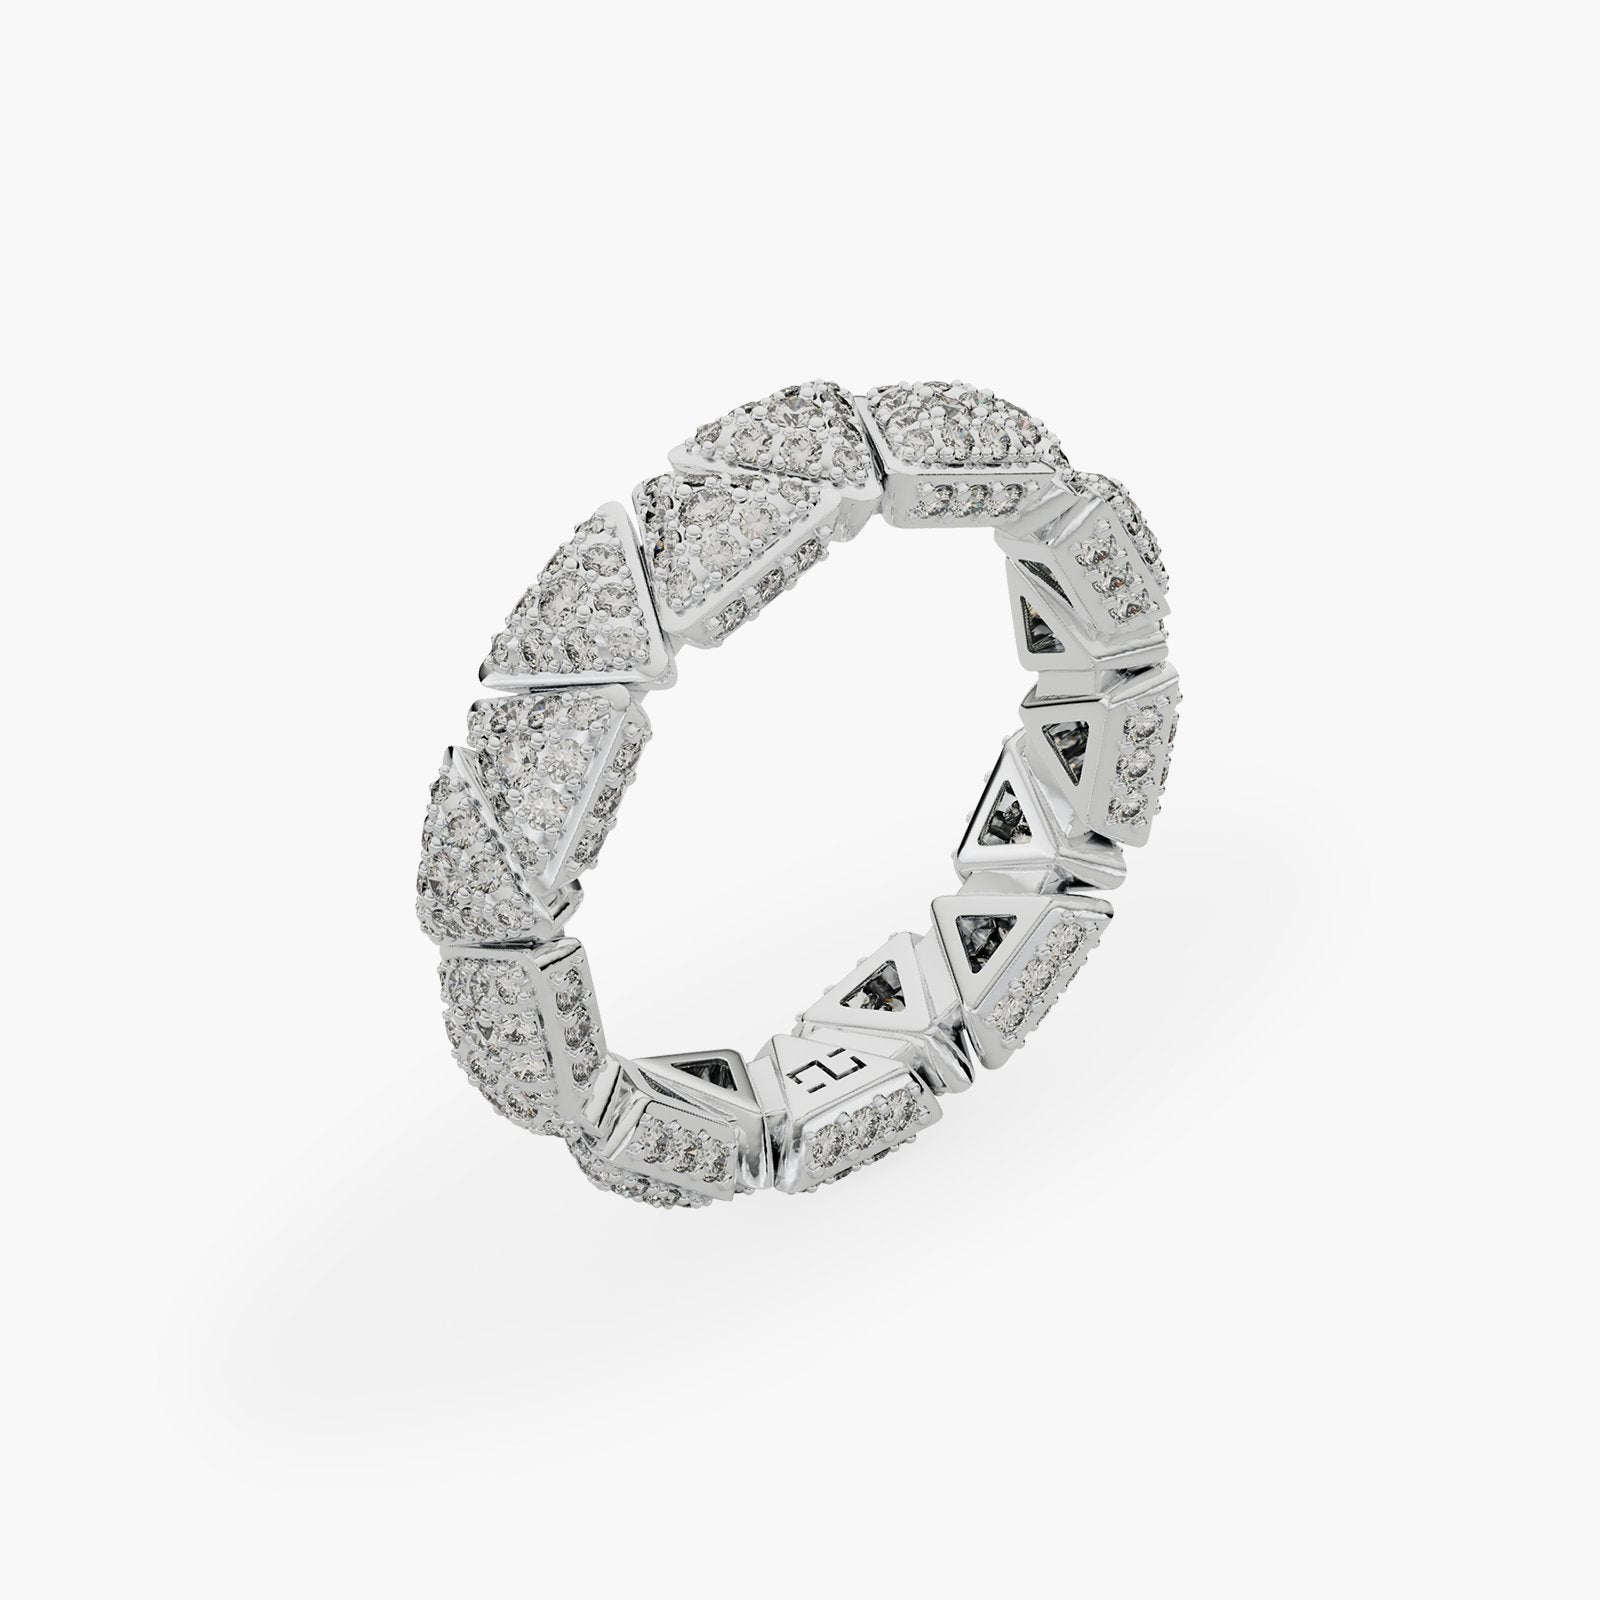 Ring Engagement Anniversary White Gold Full Diamonds Pavé